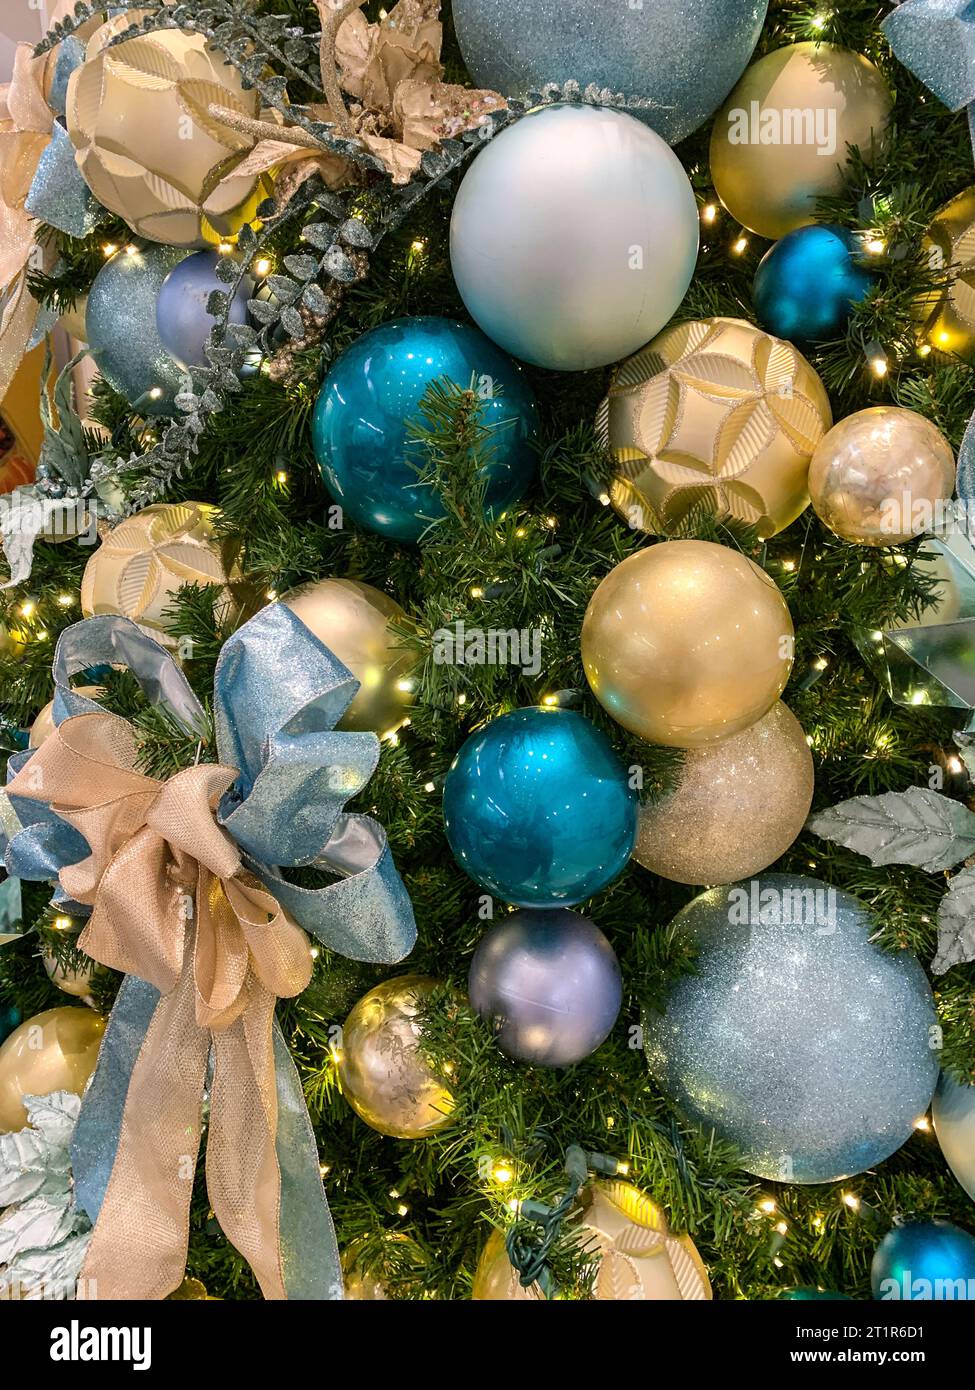 Weihnachtsbaumschmuck, Alexandria, Virginia, USA. Stockfoto